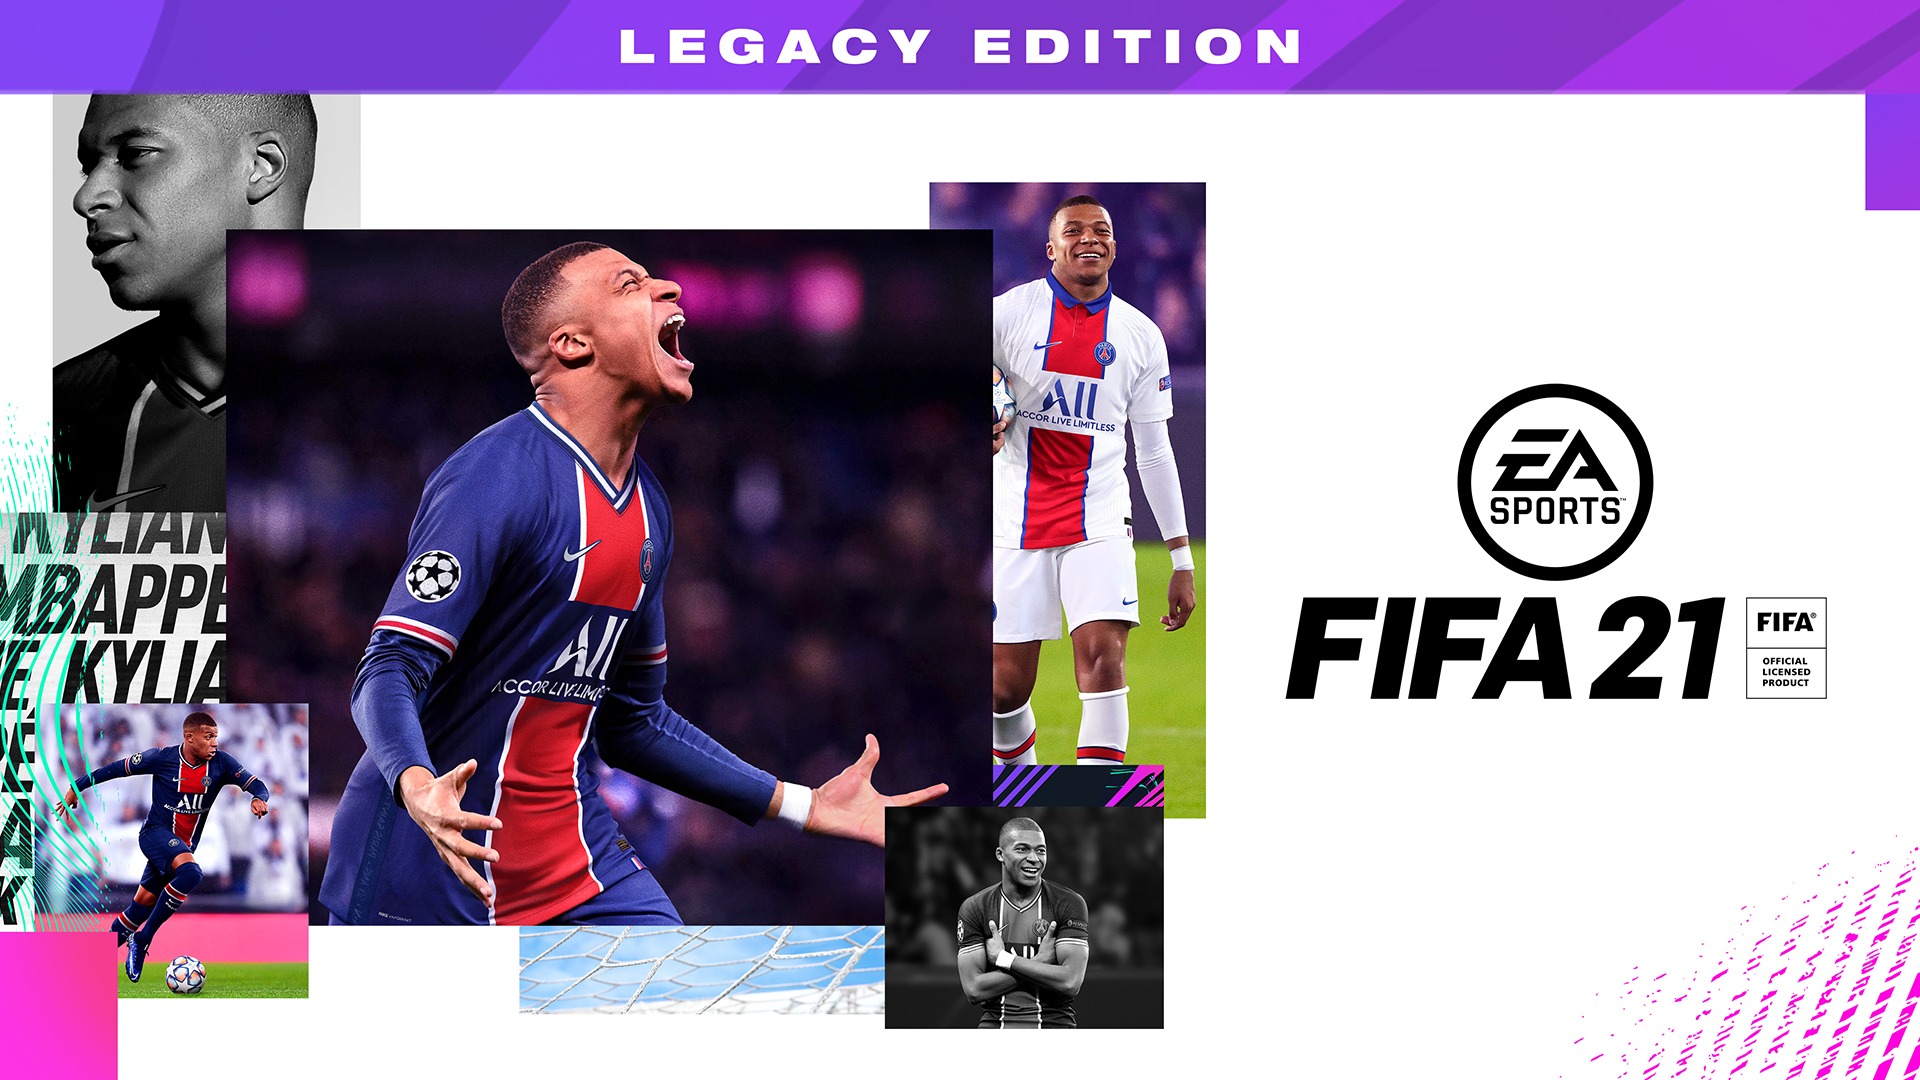 FIFA 21 Guide